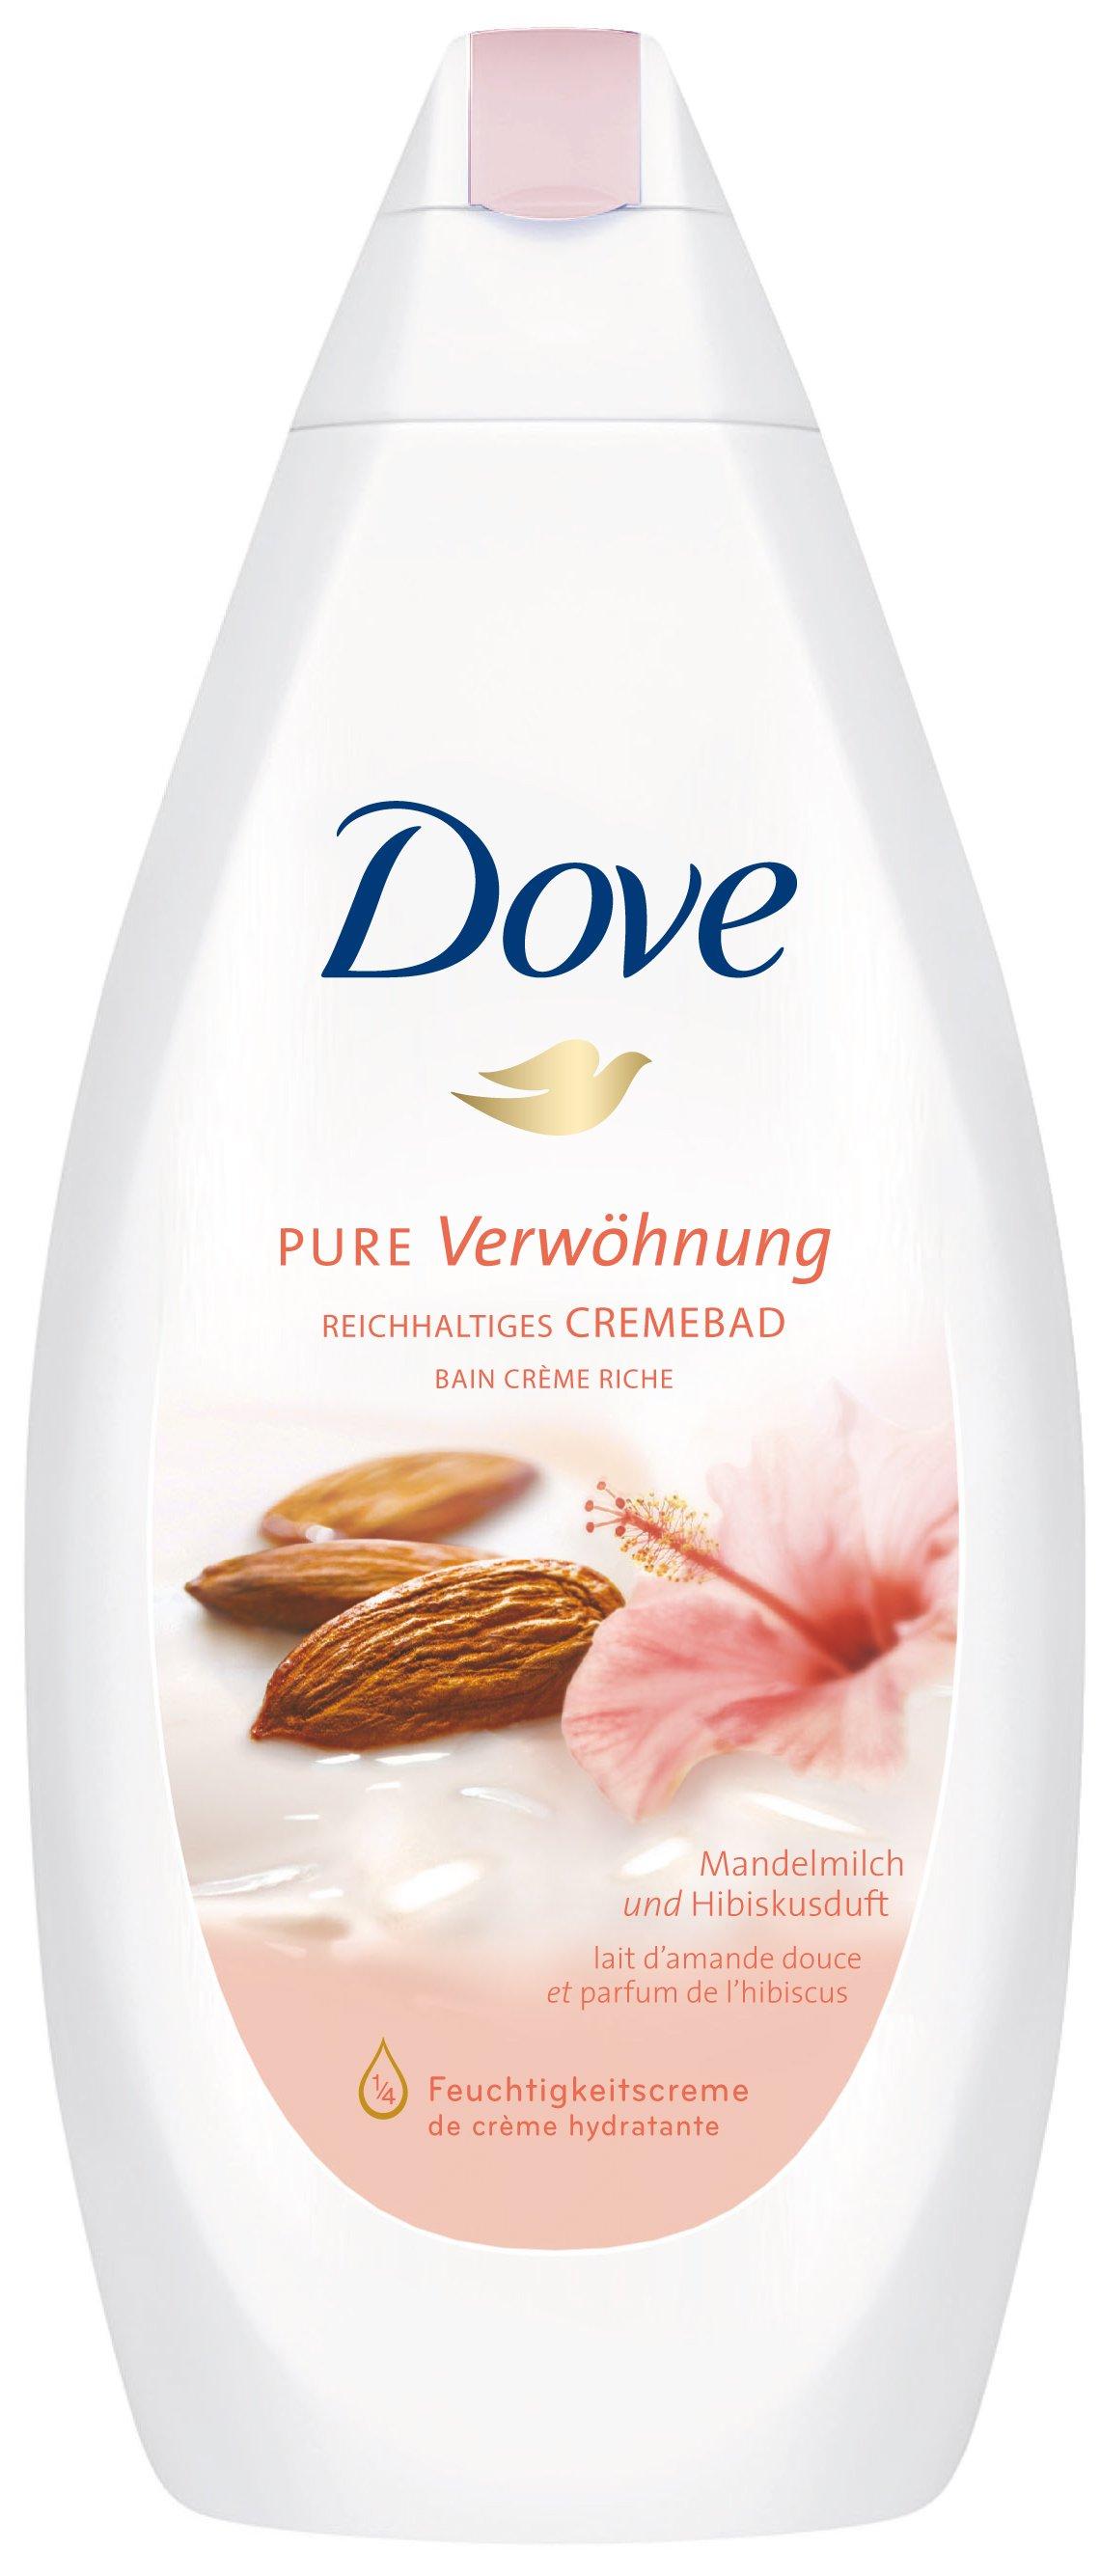 Image of Dove Pure Verwöhnung Reichhaltiges Cremebad Mandelmilch & Hibiskusduft - 750ml